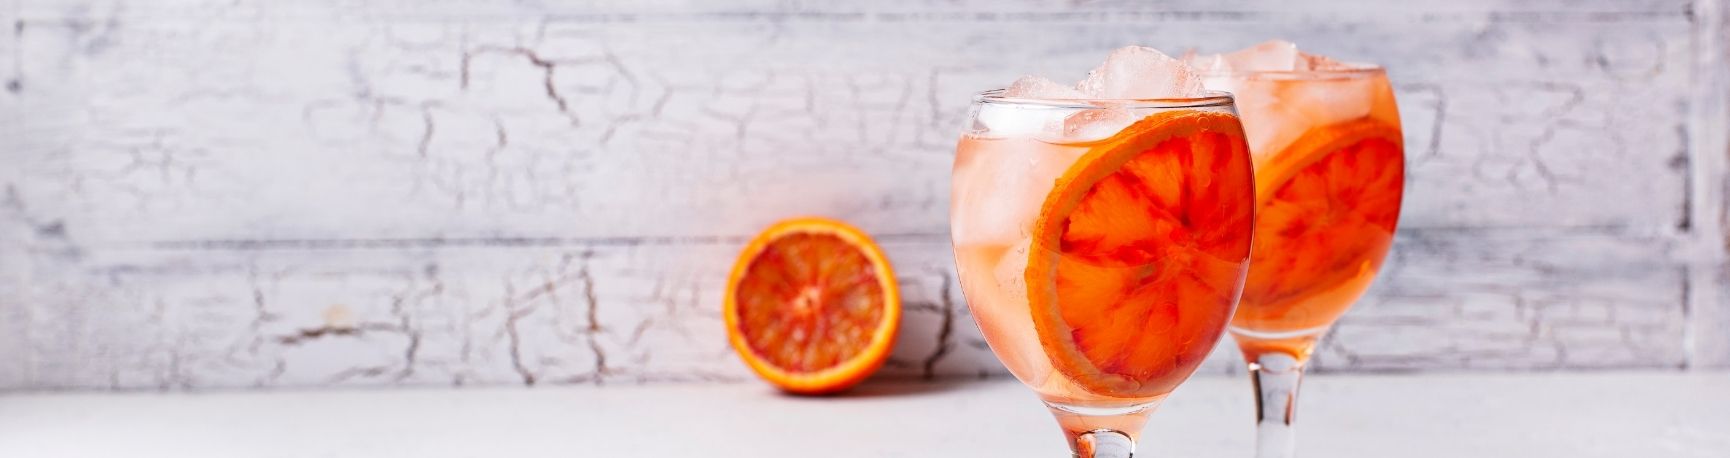 Cocktail rouge/orange italien verre à pied